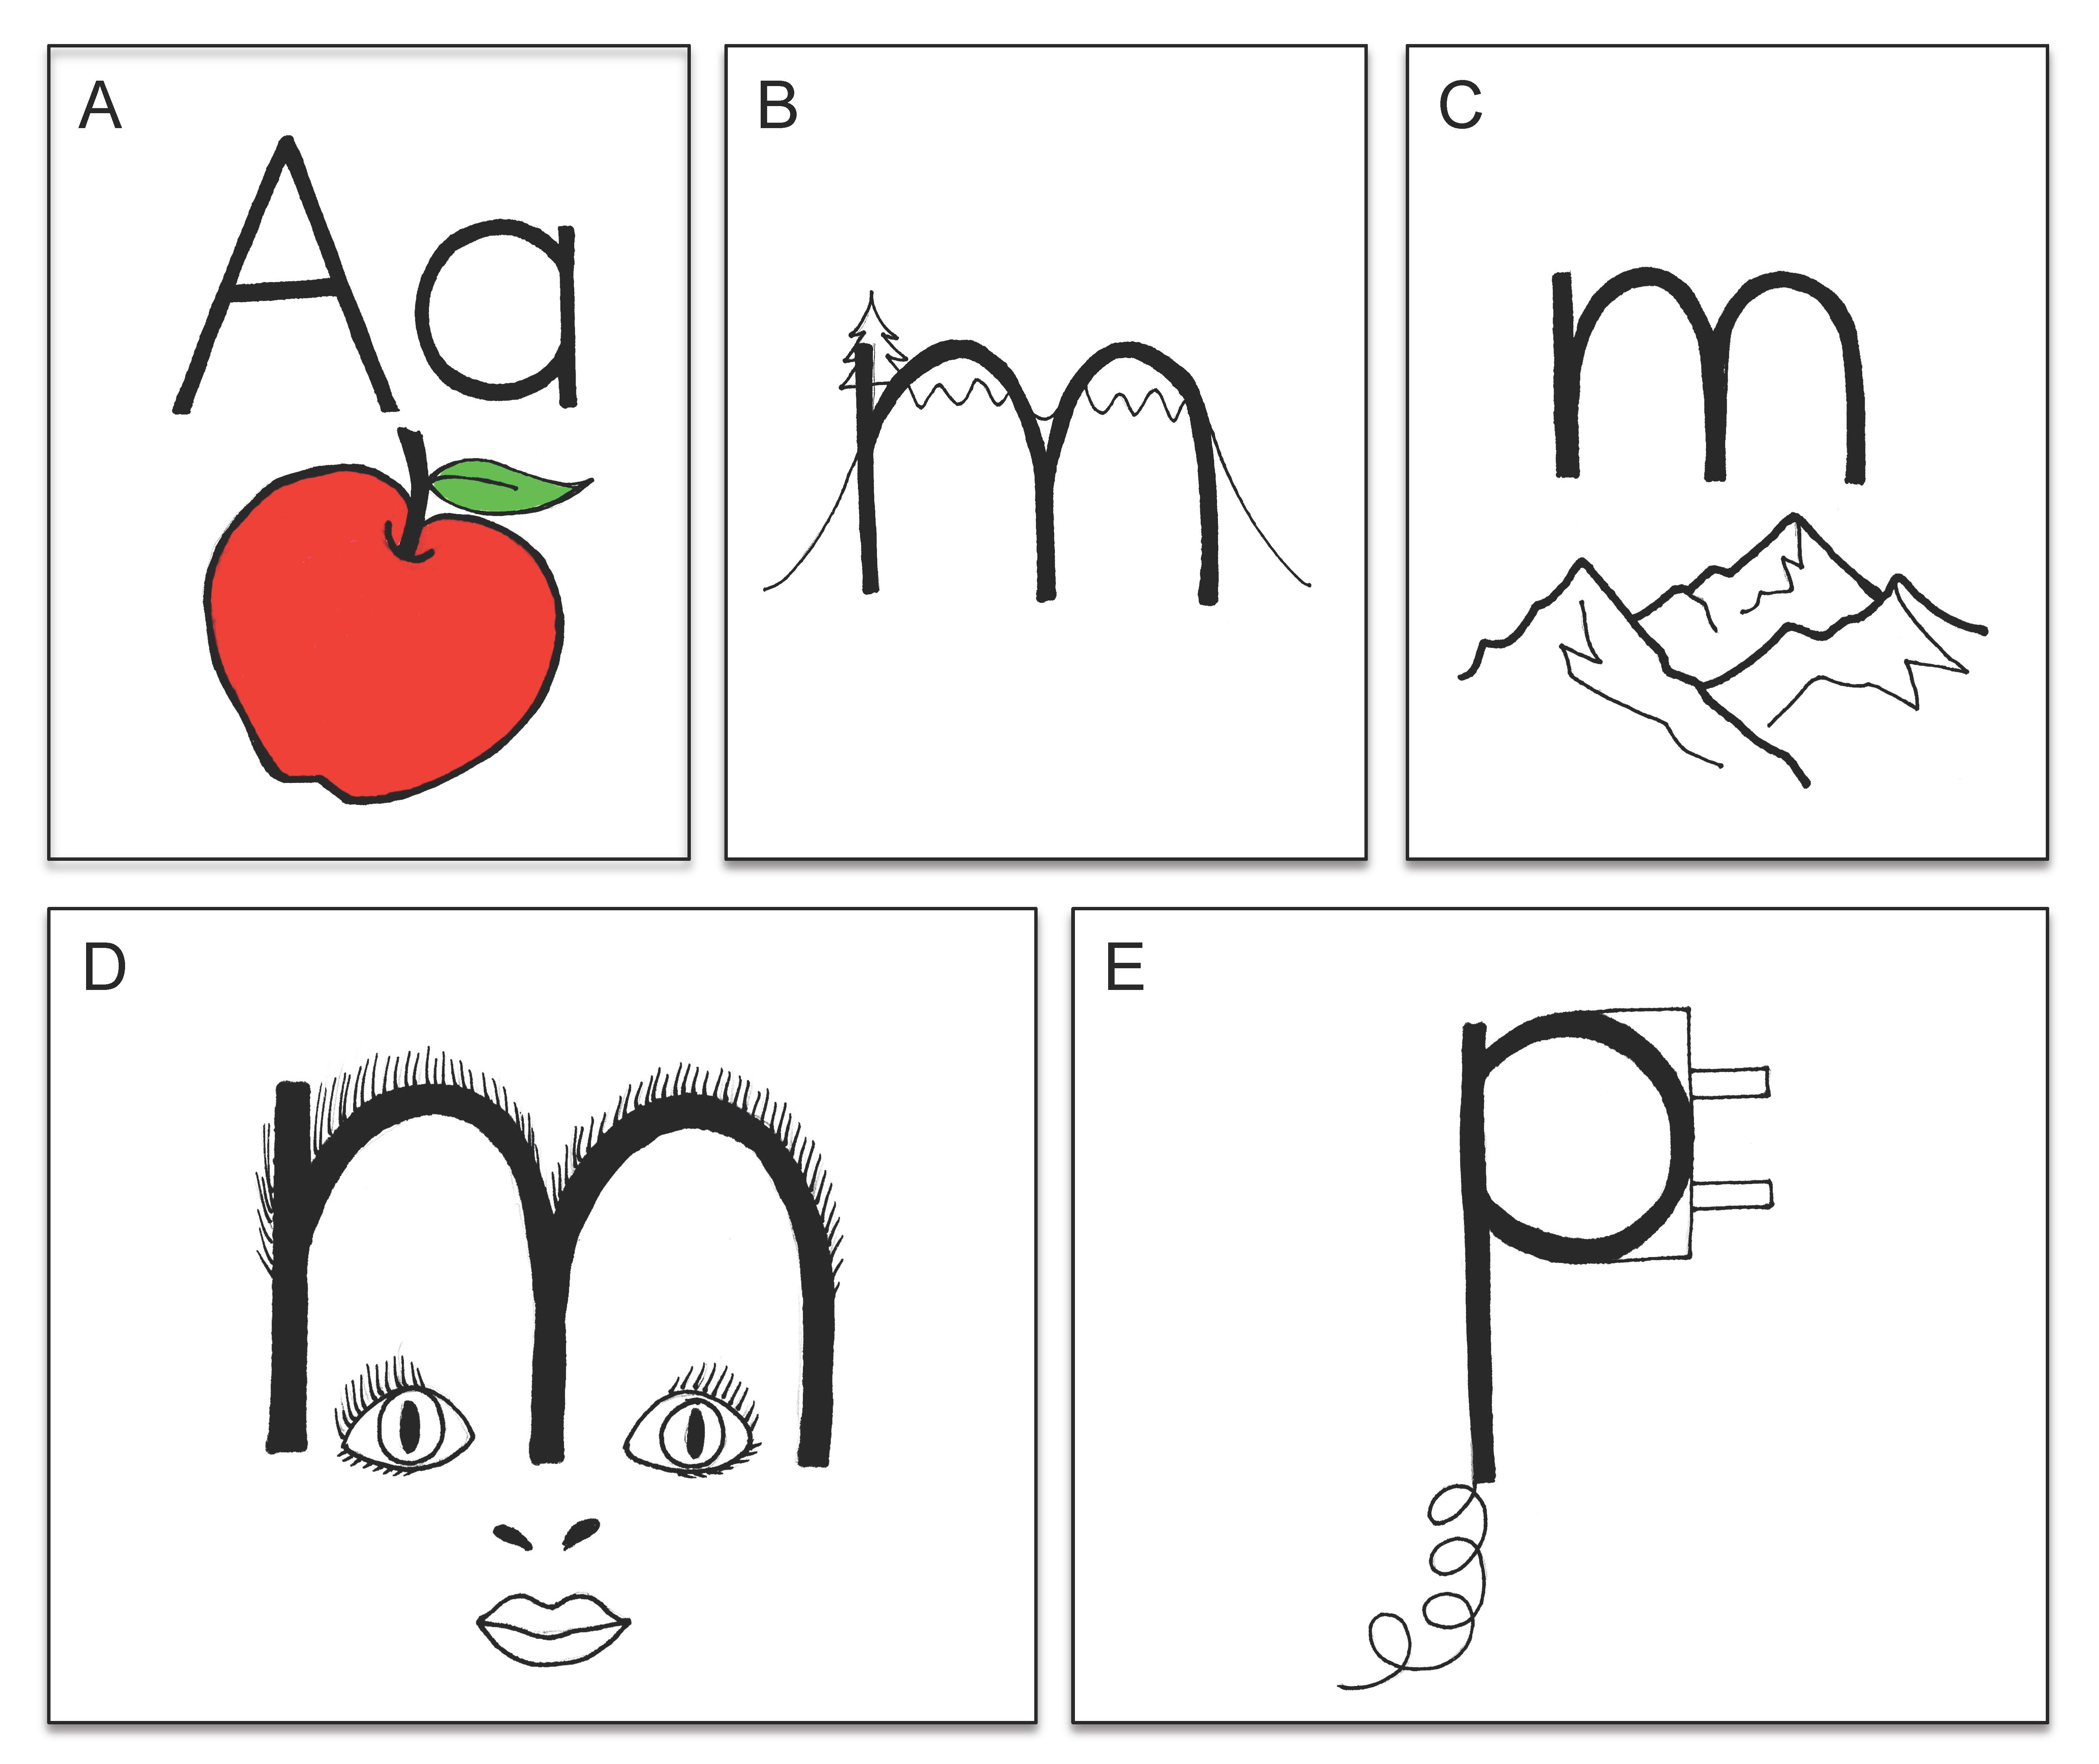 アルファベットの文字－音声の対応関係の把持に役立つ記憶術イメージ。出典： Manalo, E., Uesaka, Y., & Sekitani, K. (2013). Using mnemonic images and explicit sound contrasting to help Japanese children learn English alphabet sounds. Research in Memory and Cognition, 2, 216-221.Mnemonic images to assist in the retention of alphabet letter-sound correspondence. From: Manalo, E., Uesaka, Y., & Sekitani, K. (2013). Using mnemonic images and explicit sound contrasting to help Japanese children learn English alphabet sounds. Journal of Applied Research in Memory and Cognition, 2, 216-221.